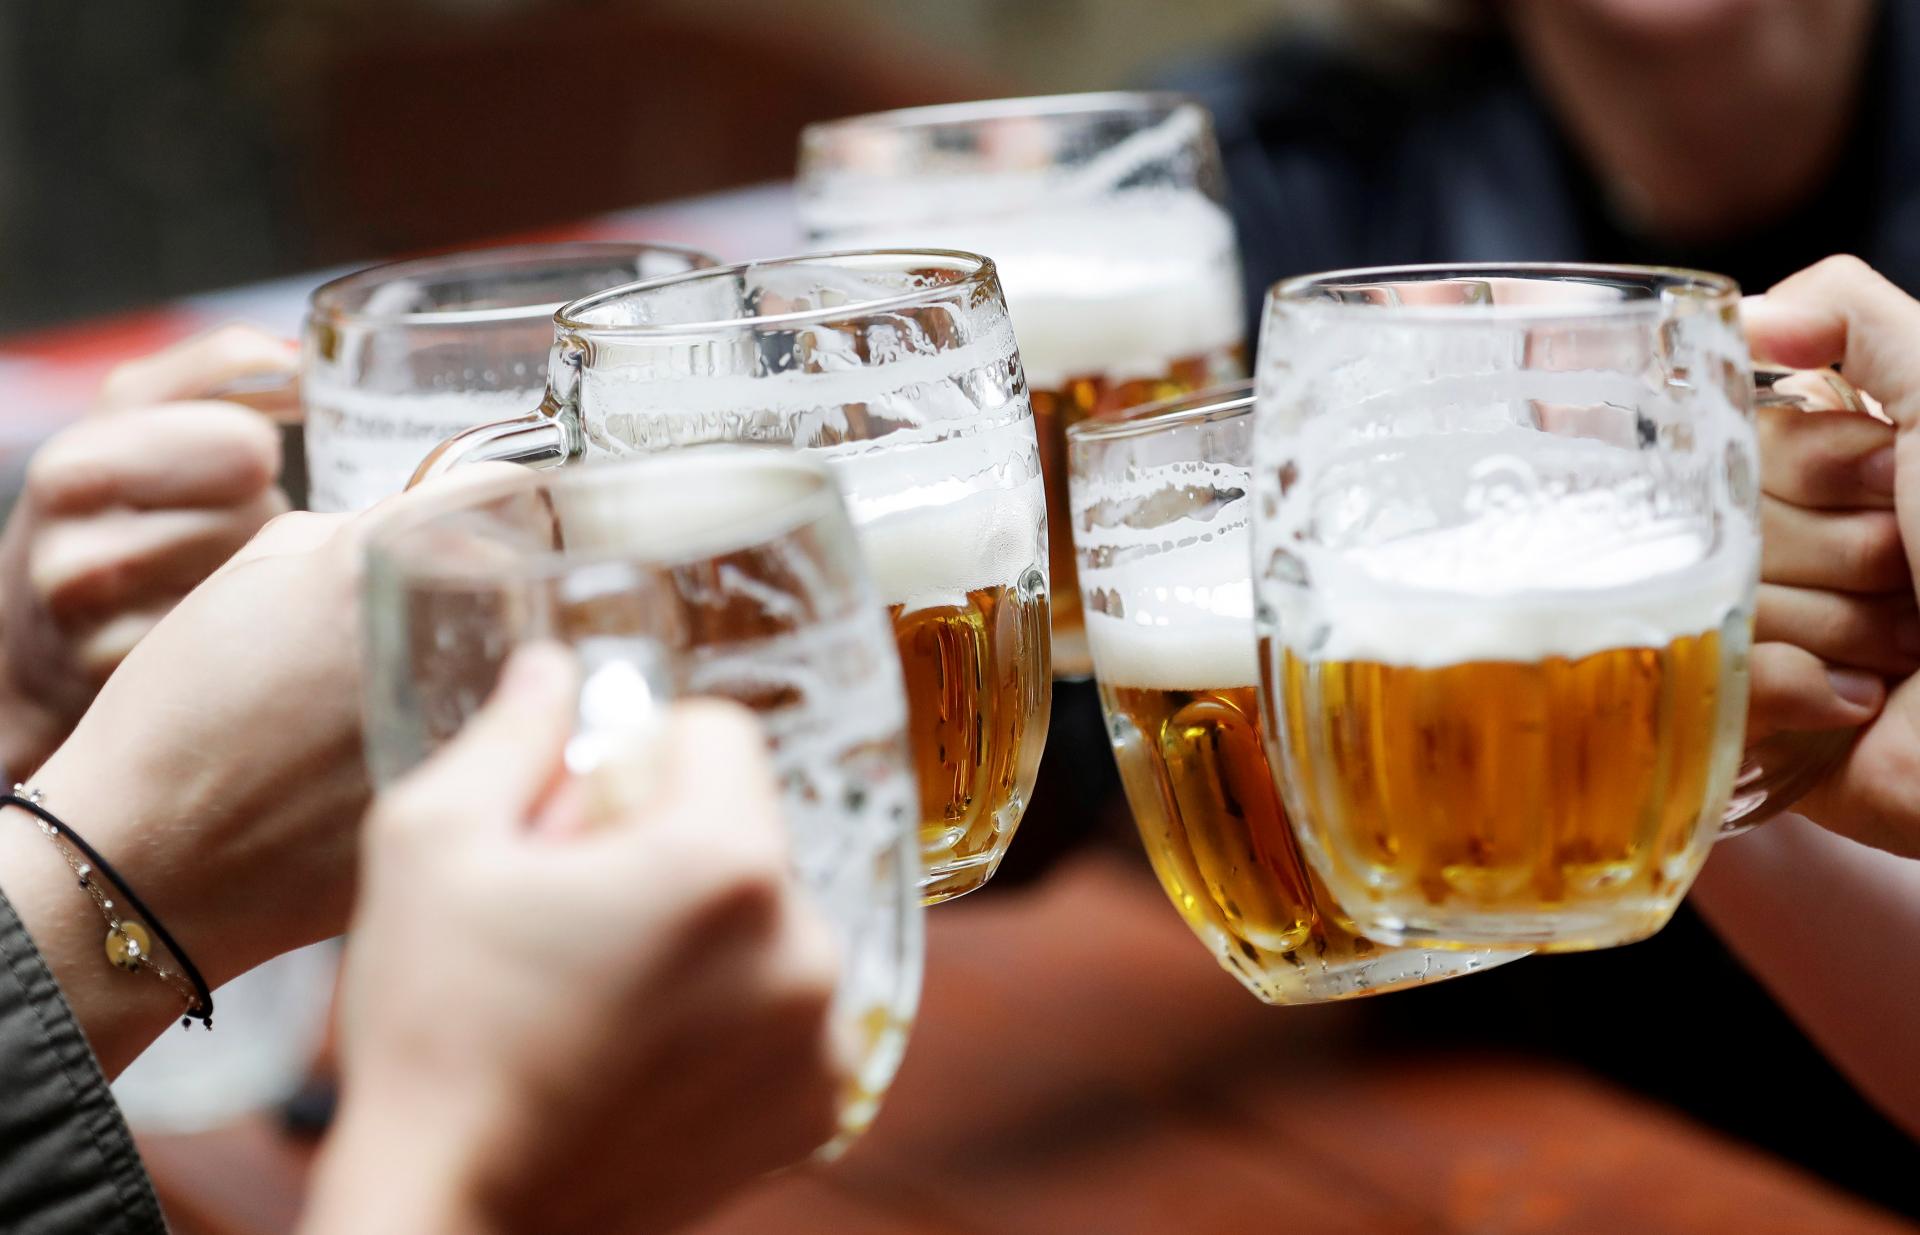 Mladých zlatý mok neláka. V Česku sa vlani vypilo najmenej piva za 60 rokov